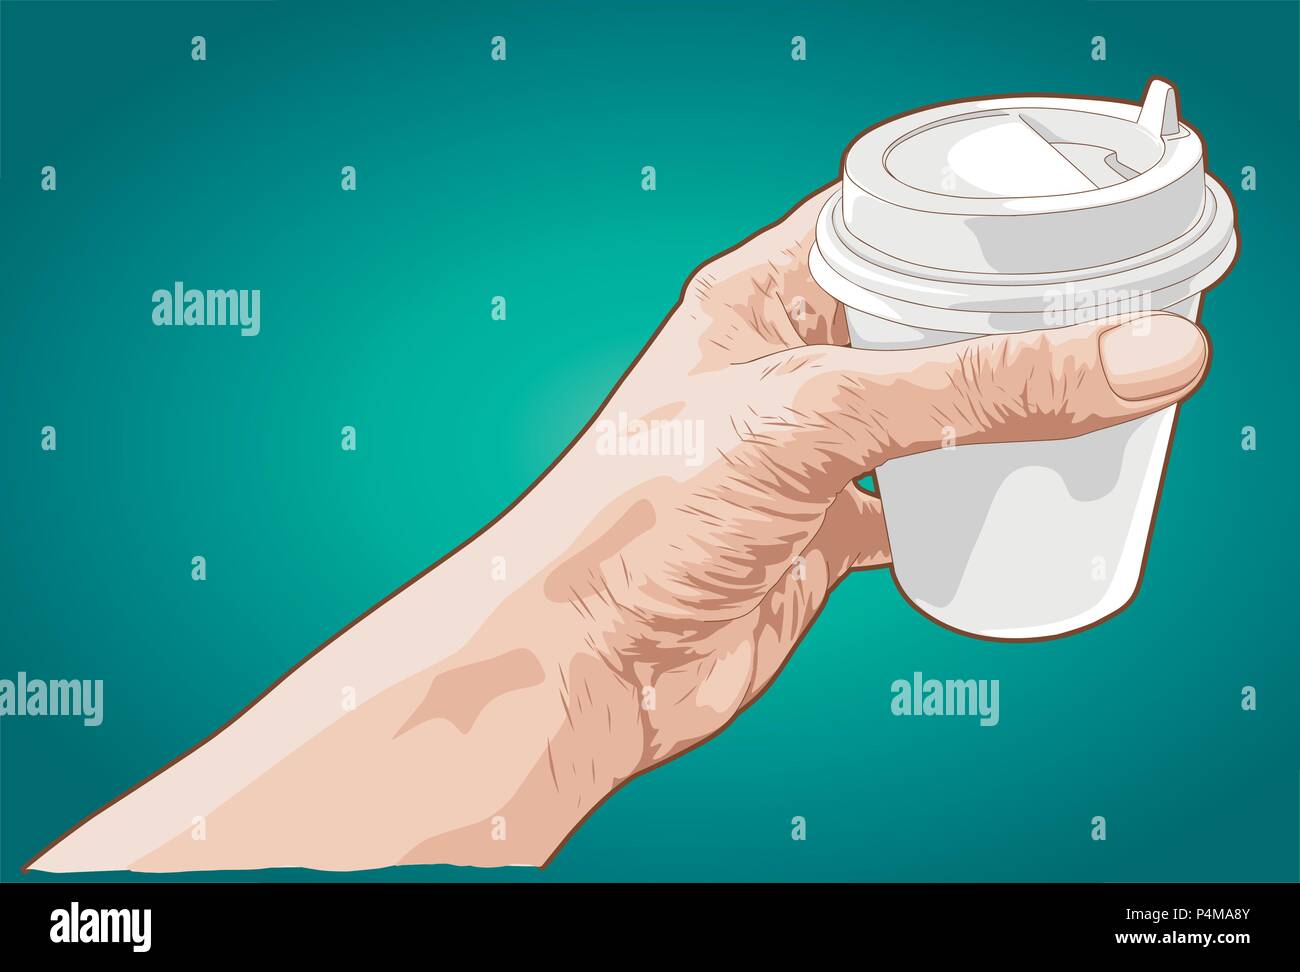 Croquis dessinés à la main, d'une main tenant une tasse de café en papier Illustration de Vecteur